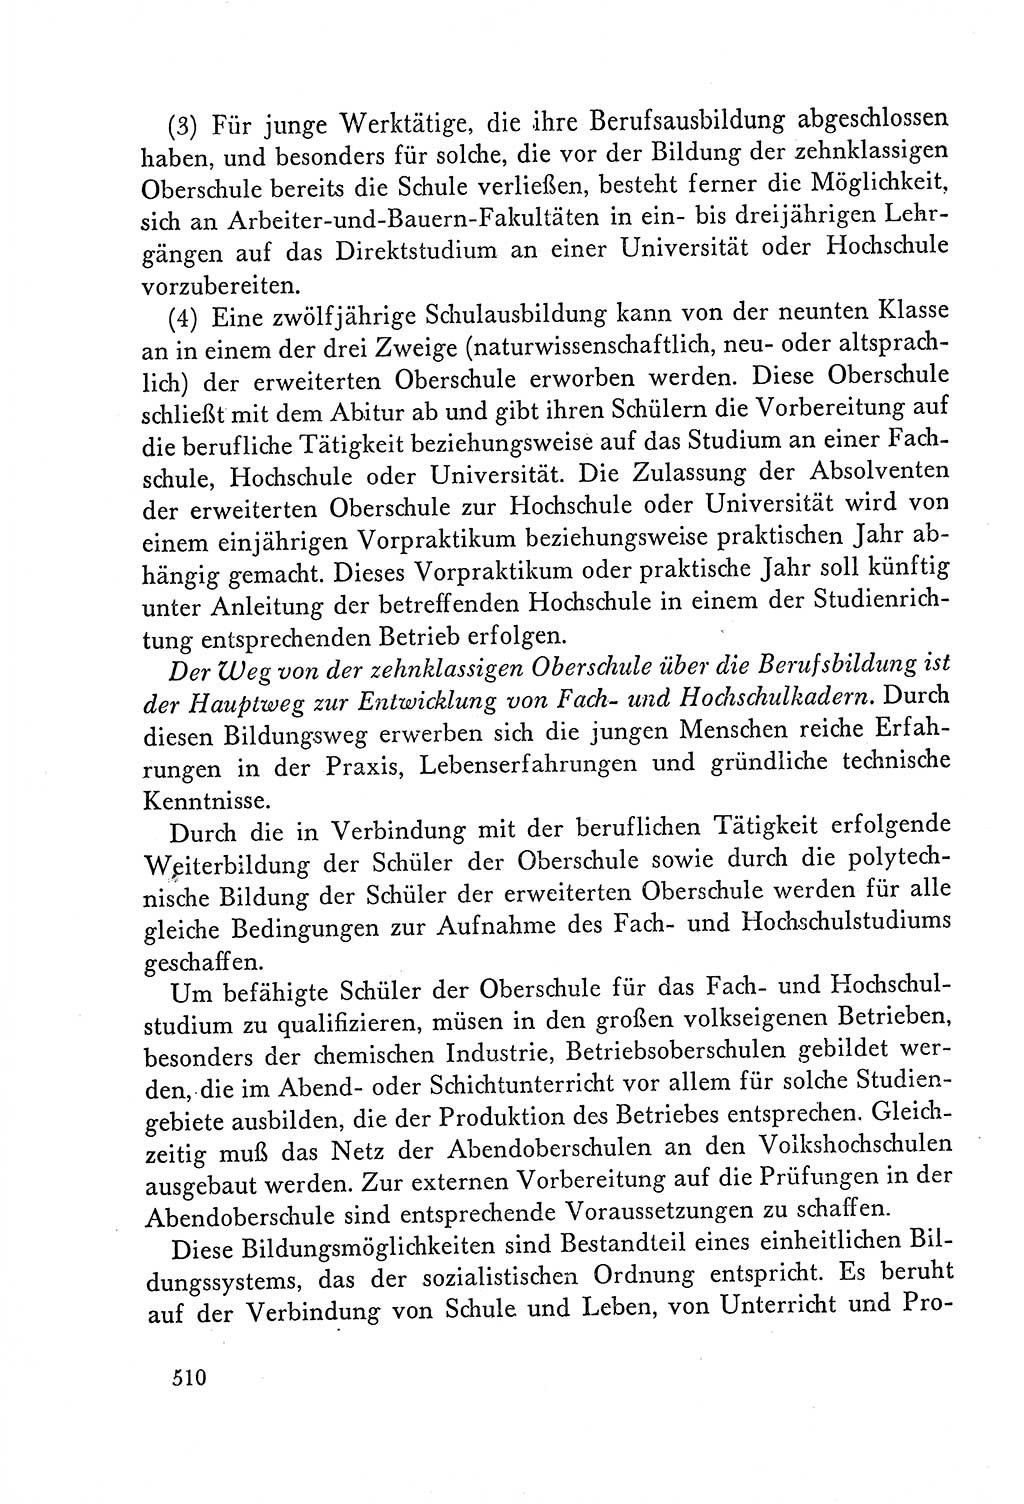 Dokumente der Sozialistischen Einheitspartei Deutschlands (SED) [Deutsche Demokratische Republik (DDR)] 1958-1959, Seite 510 (Dok. SED DDR 1958-1959, S. 510)